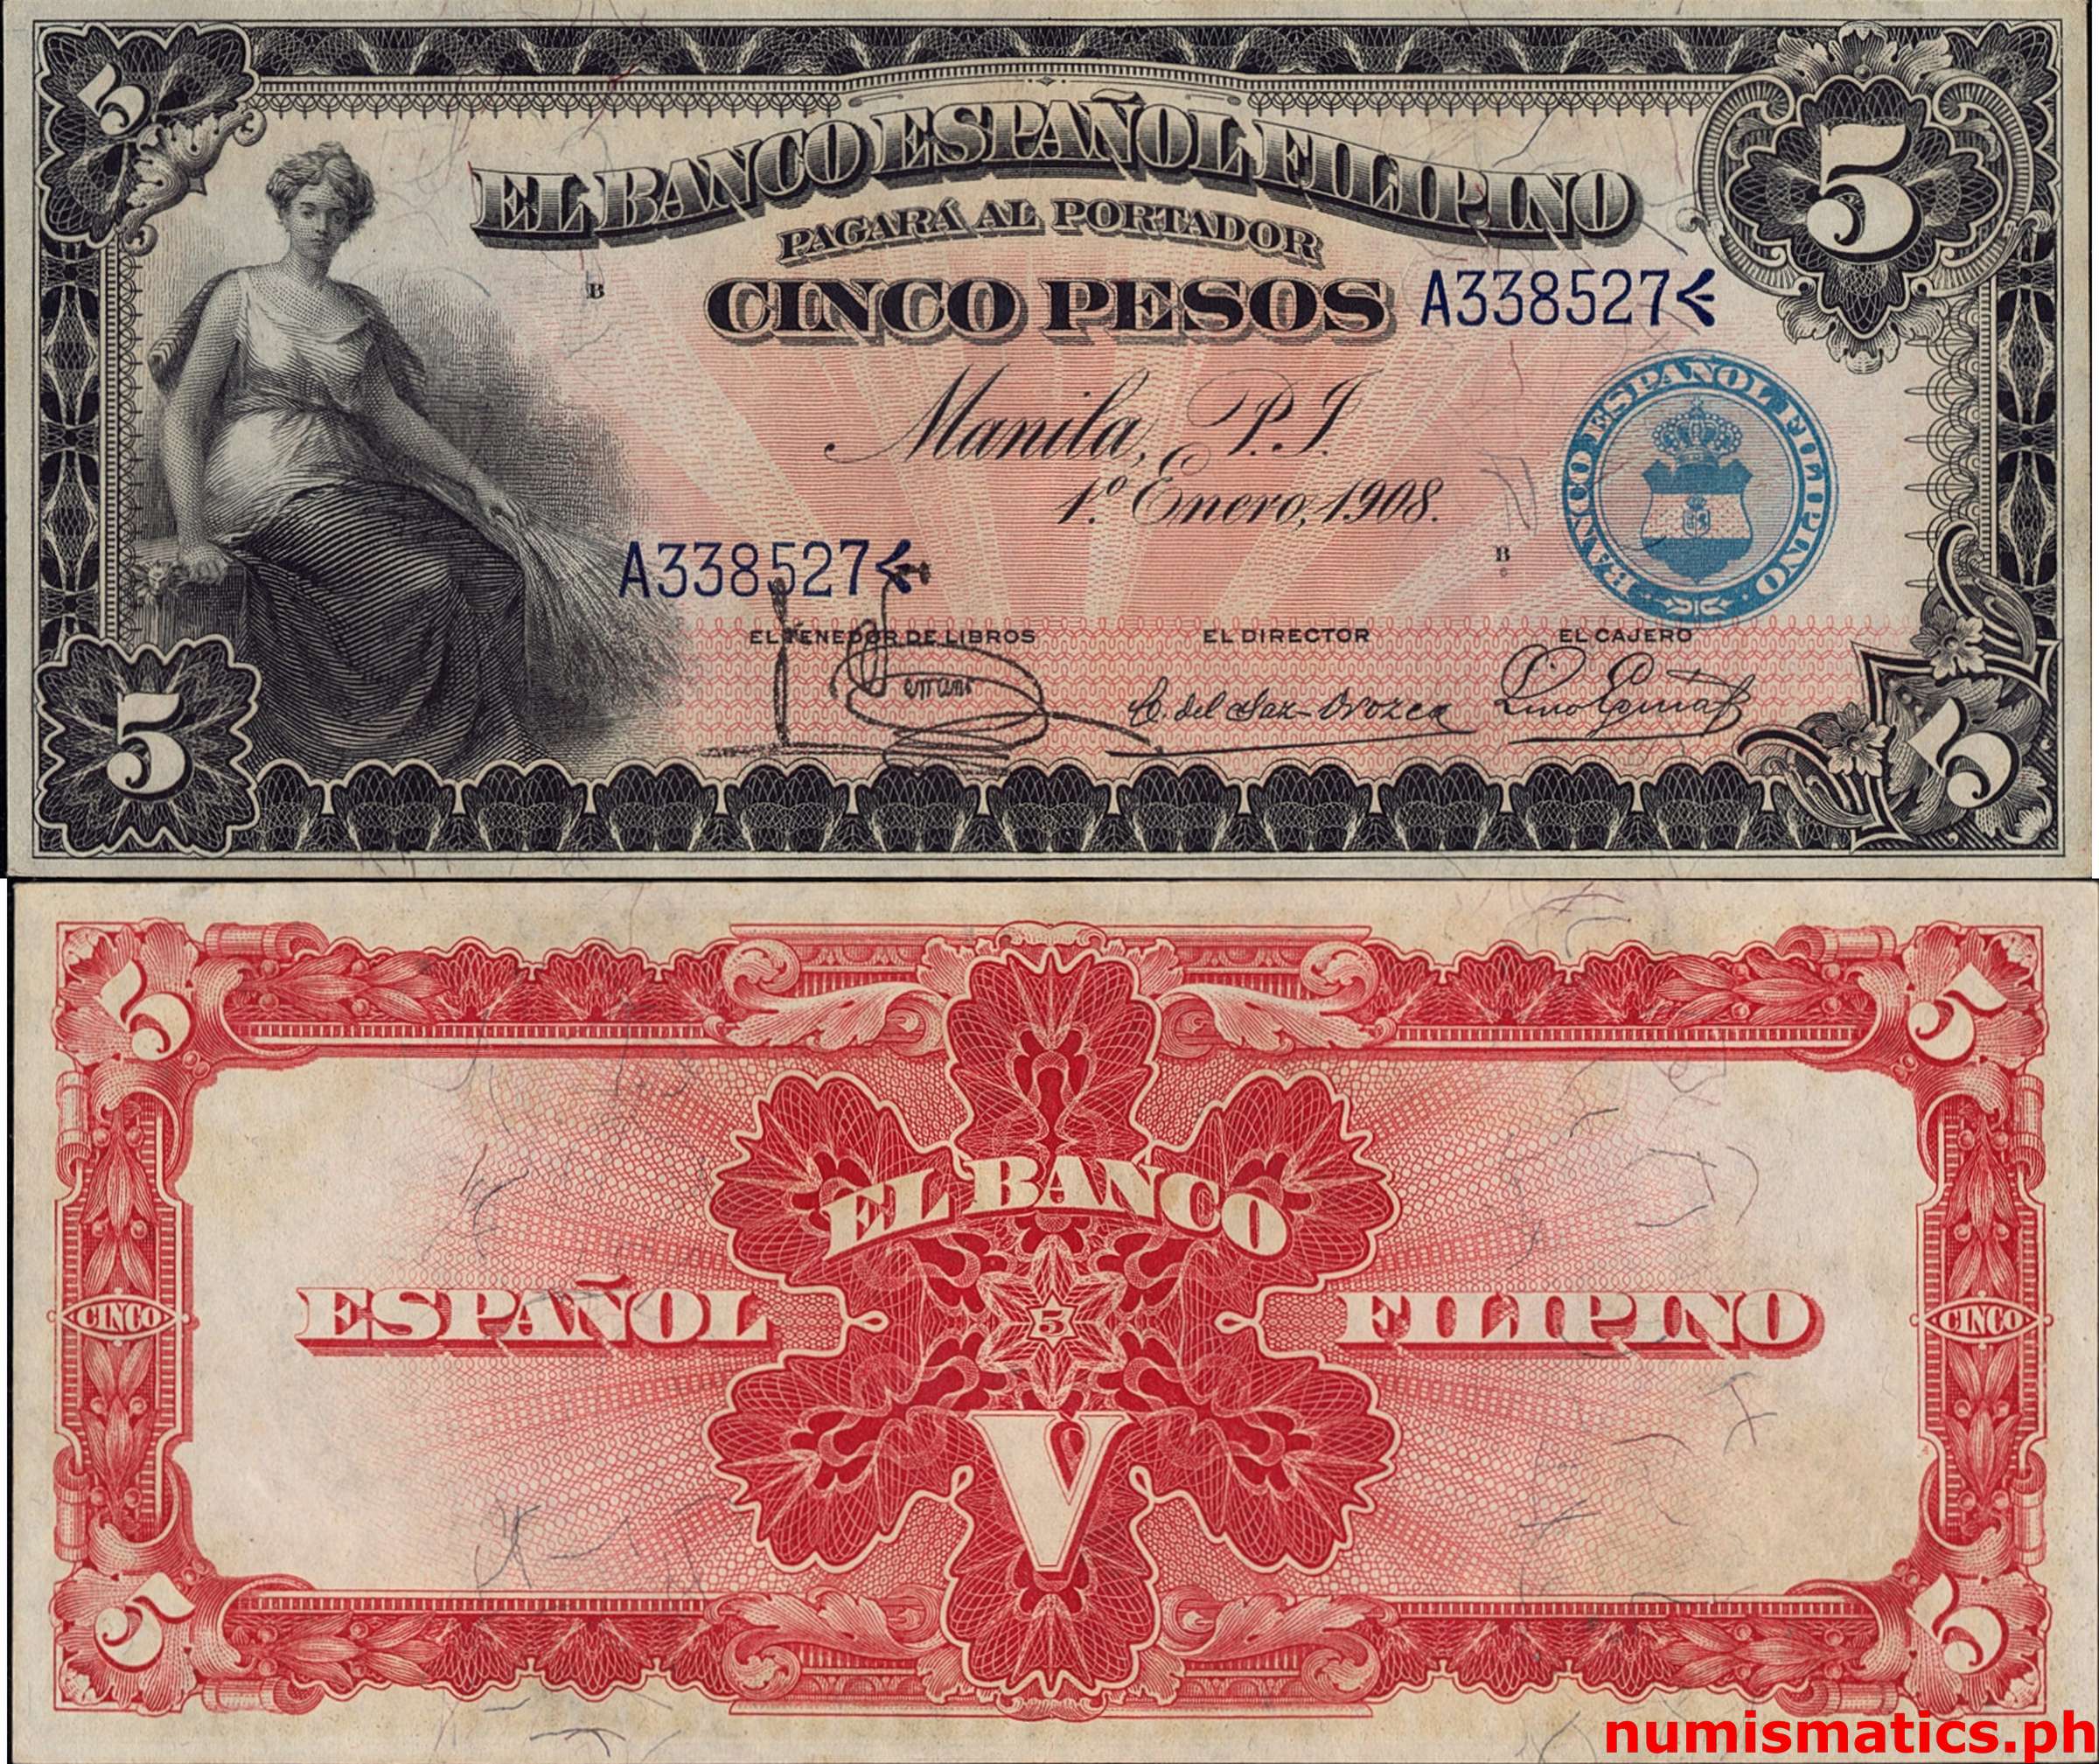 1908 5 Pesos Serrano - del Saz Orozco - Eguia El Banco Español Filipino Circulating Note